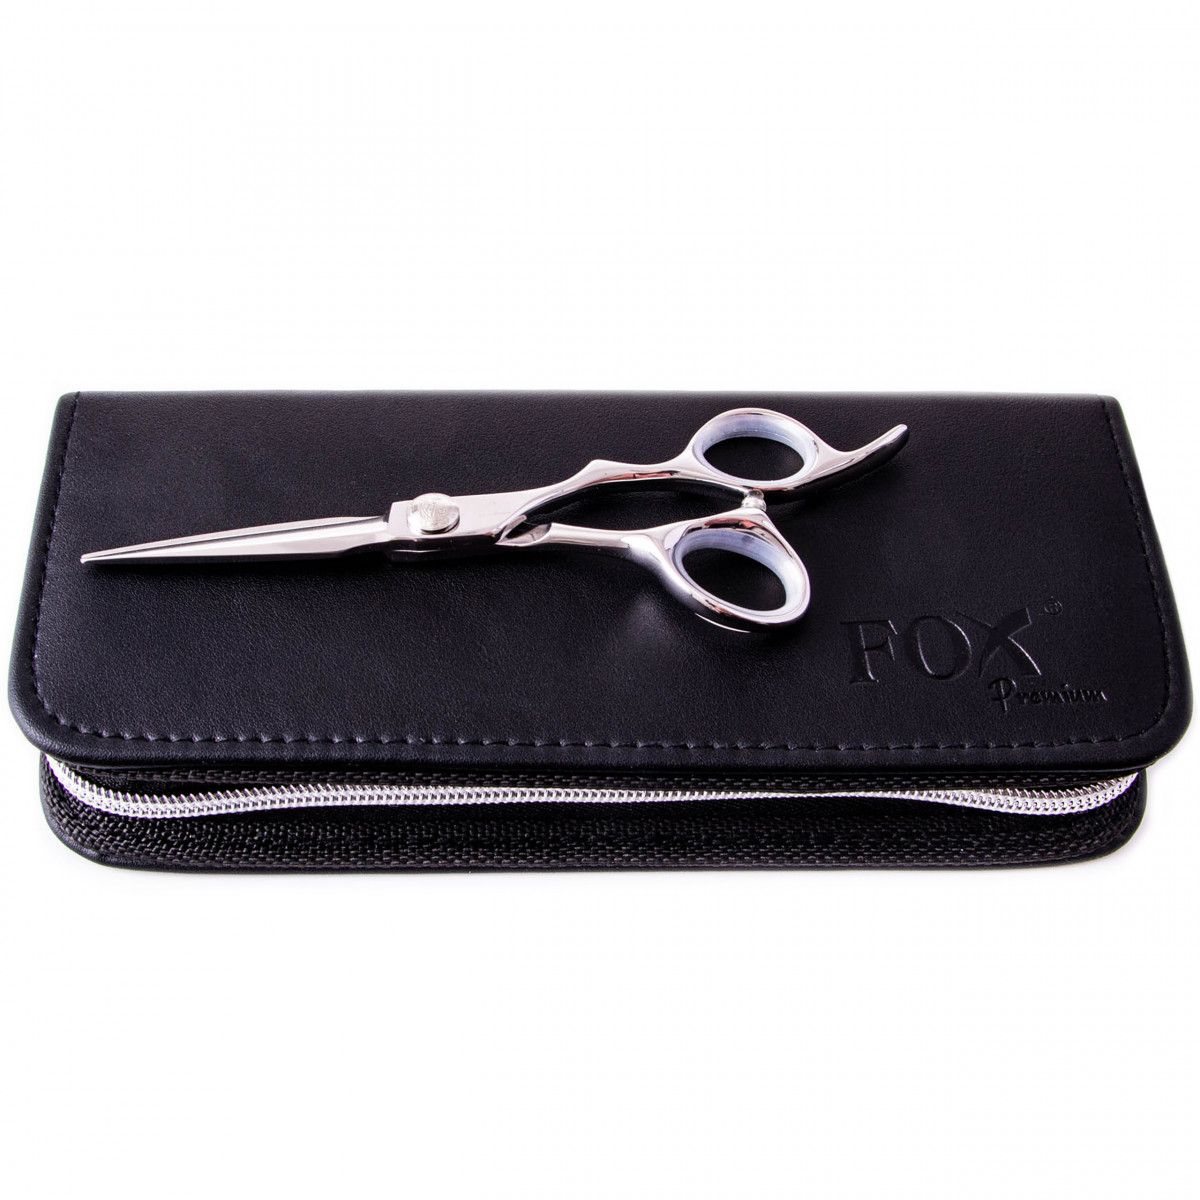 Fox Rose Silver Premium profesjonalne nożyczki fryzjerskie w etui